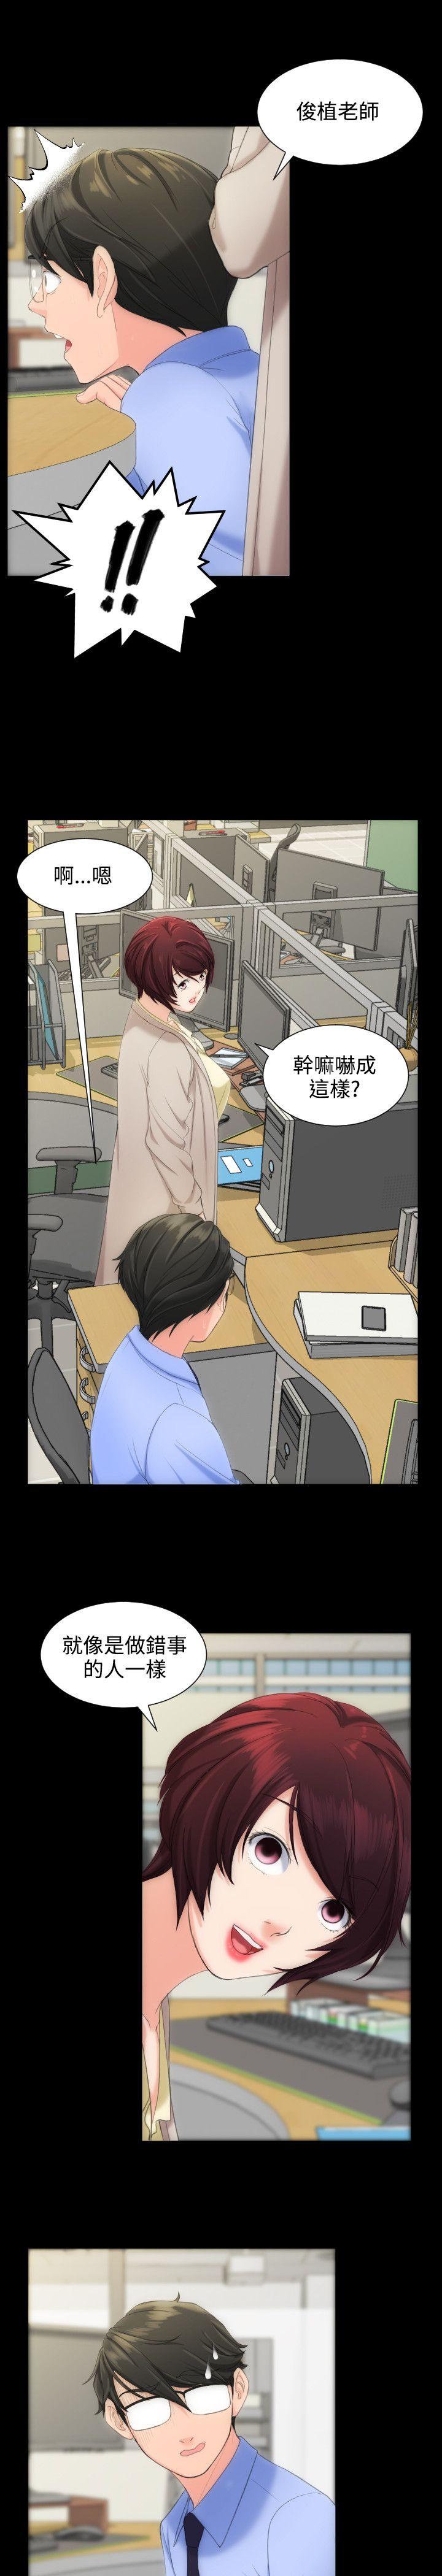 韩国污漫画 成人的滋味 第7话 17